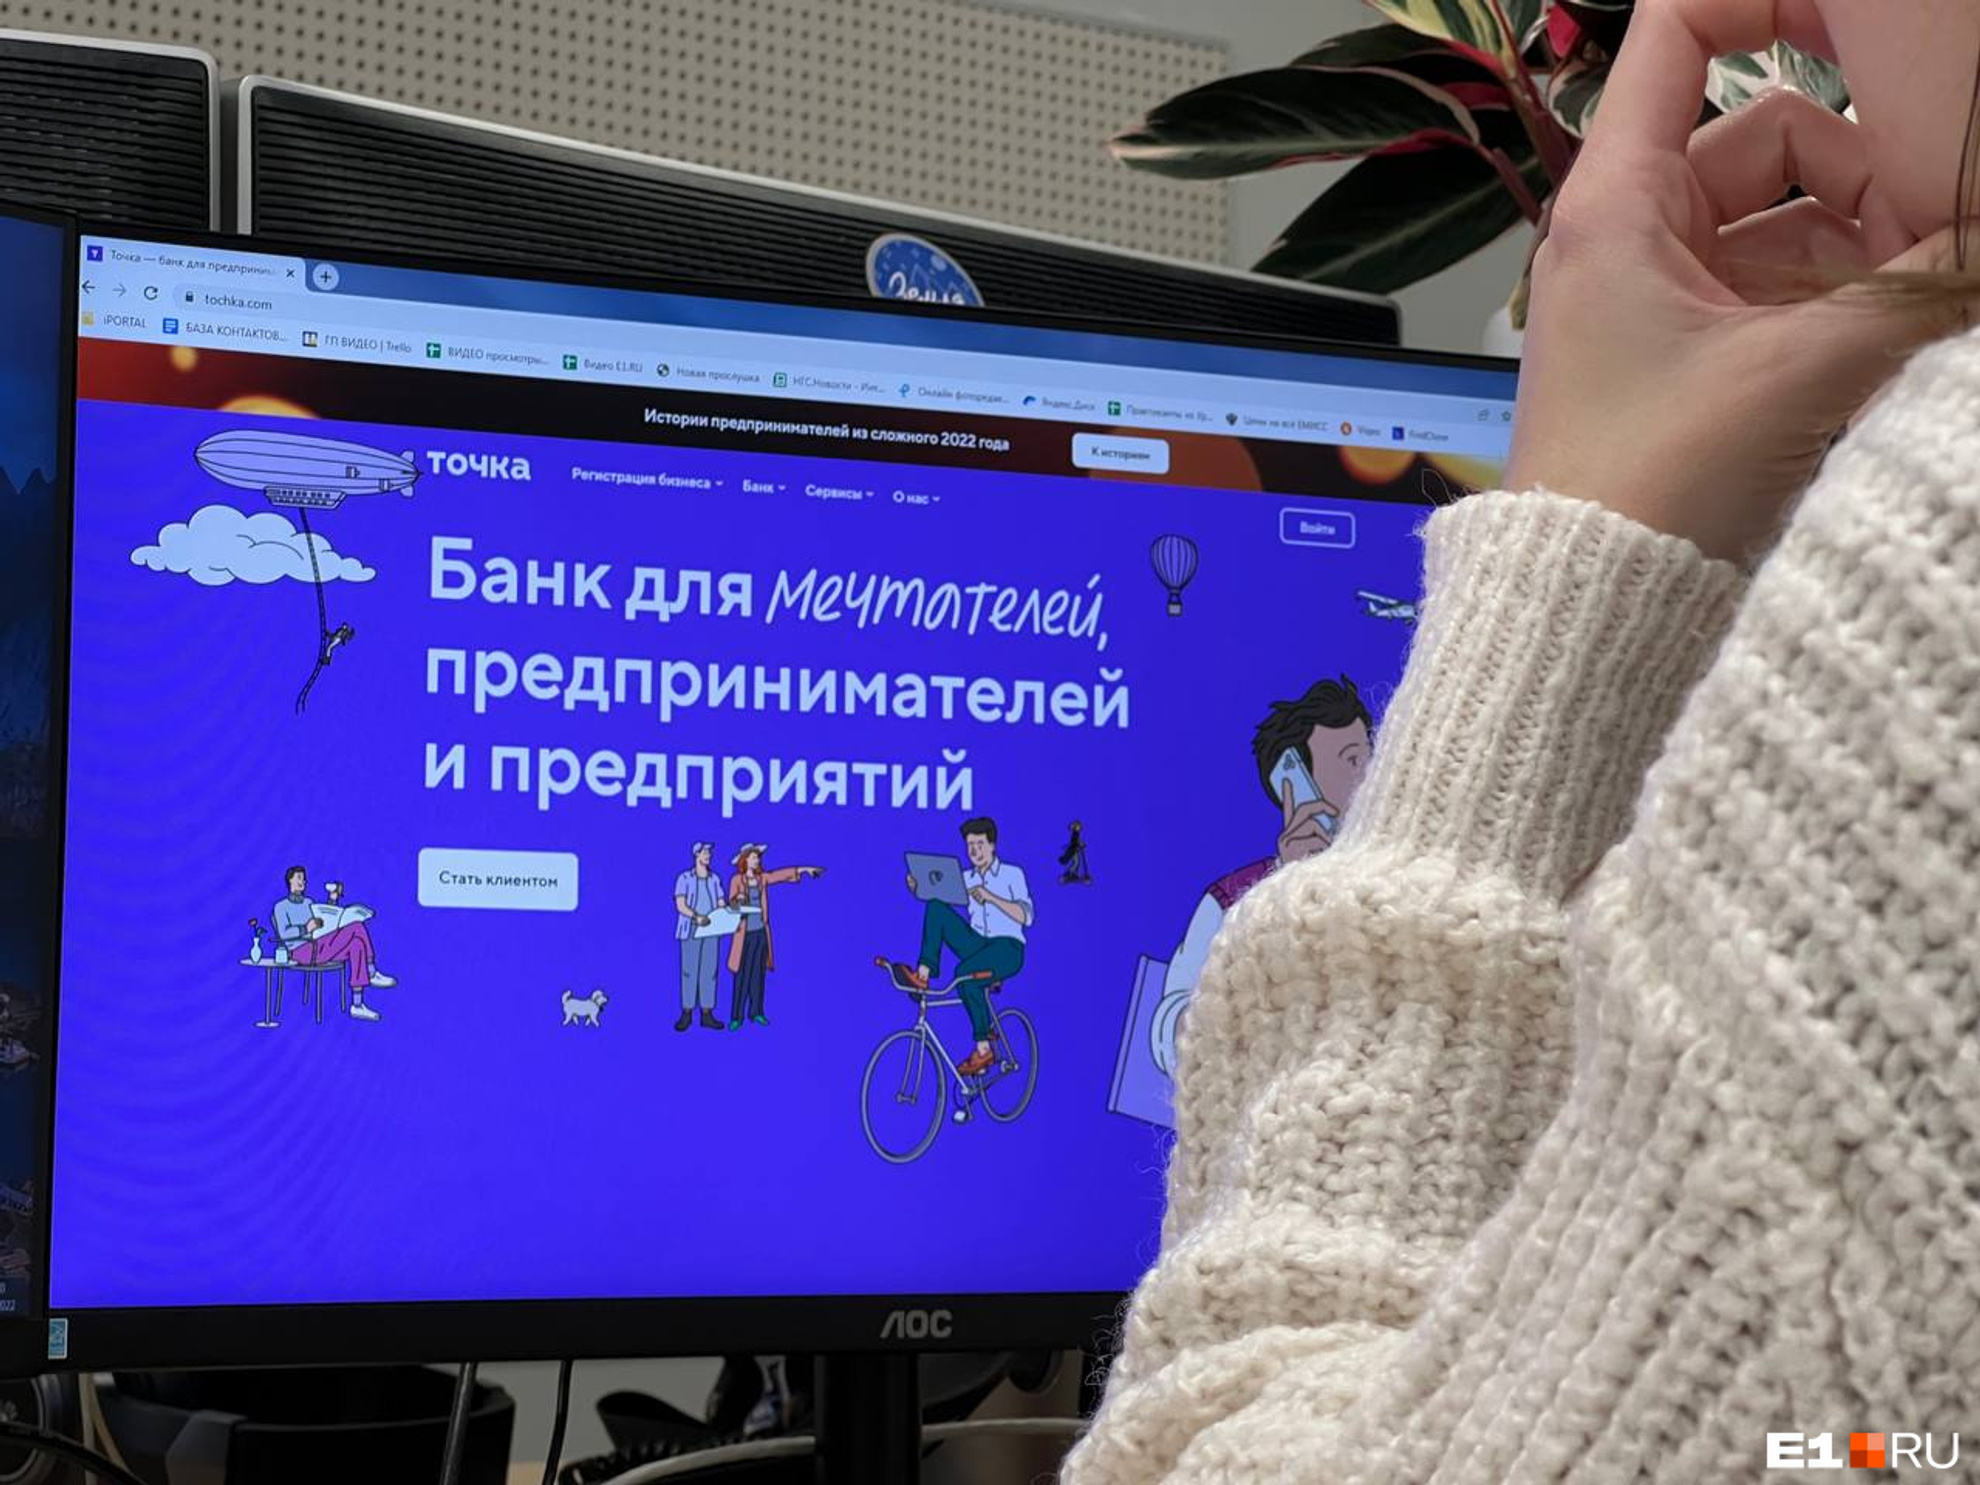 Уральский банк выставили на торги. Что это значит для его клиентов?